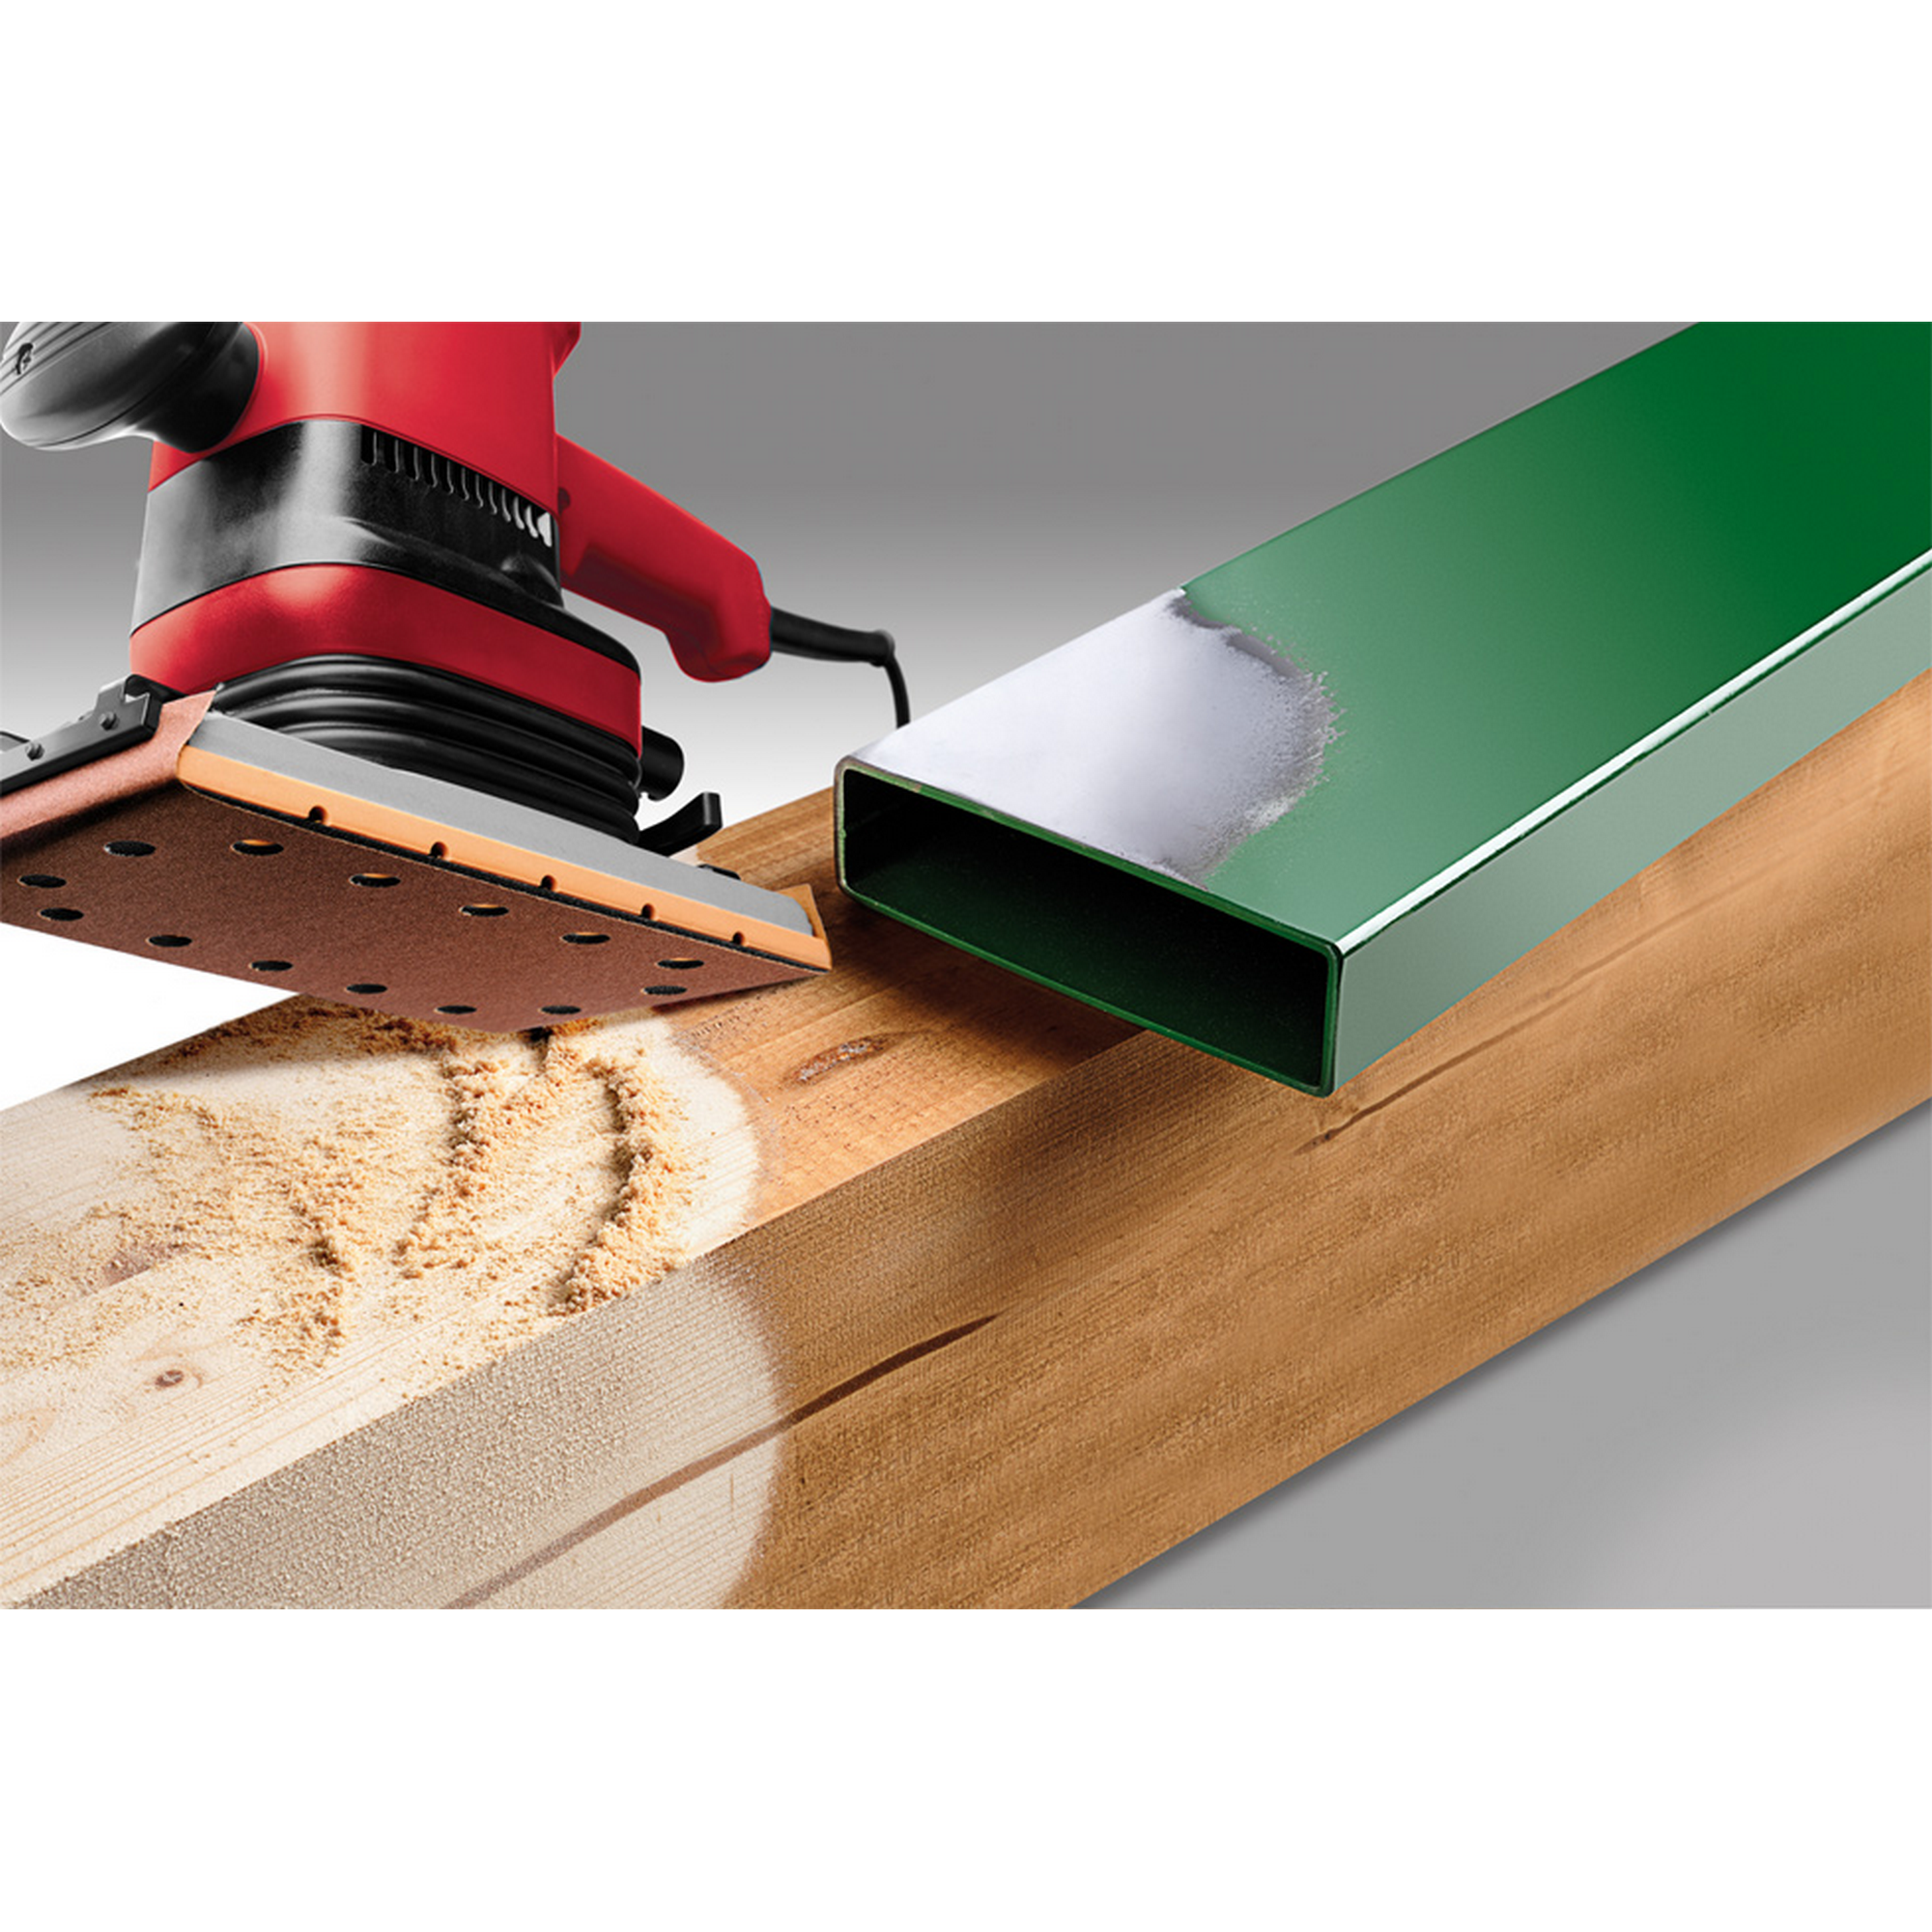 Schleifstreifen 'Holz & Metall' 115 x 280 mm K60 10 Stück + product picture